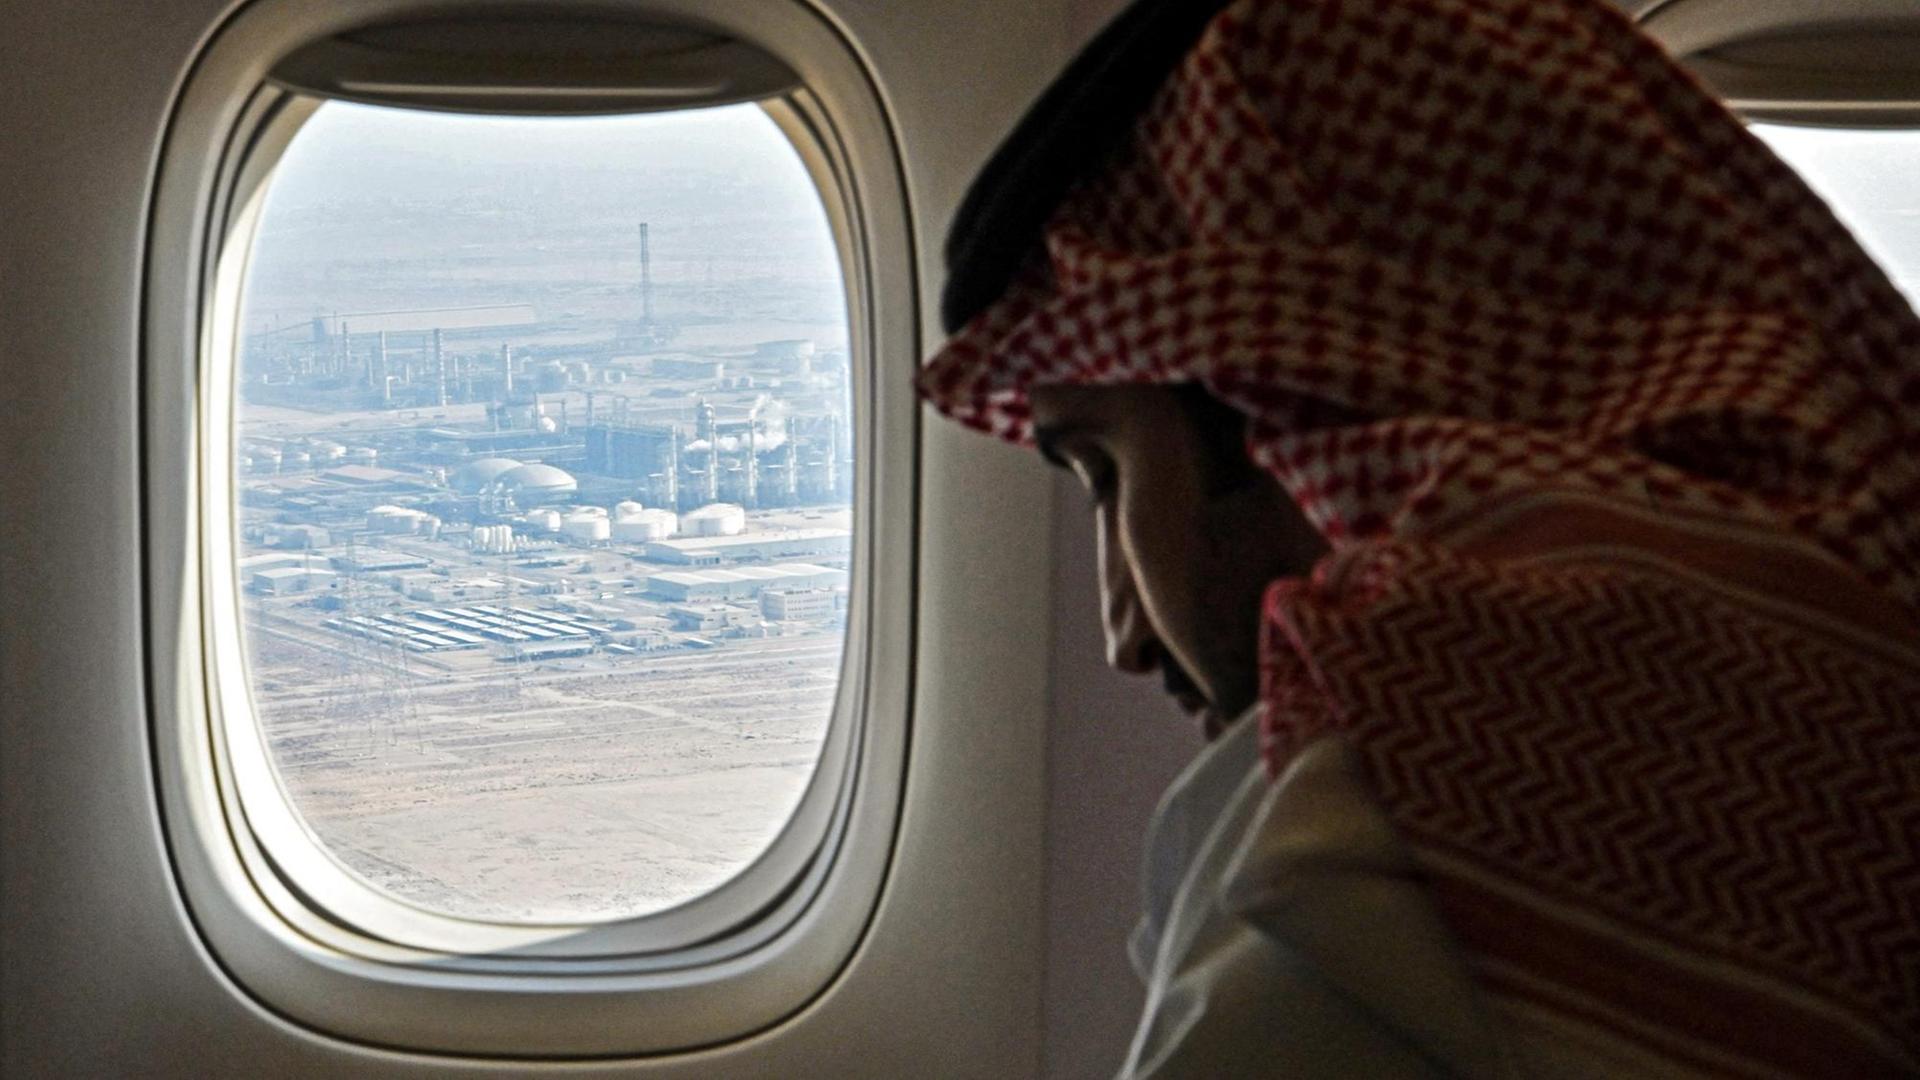 Ein saudischer Mann schaut durch ein Flugzeugfenster, durch das eine Ölraffinerie zu sehen ist.